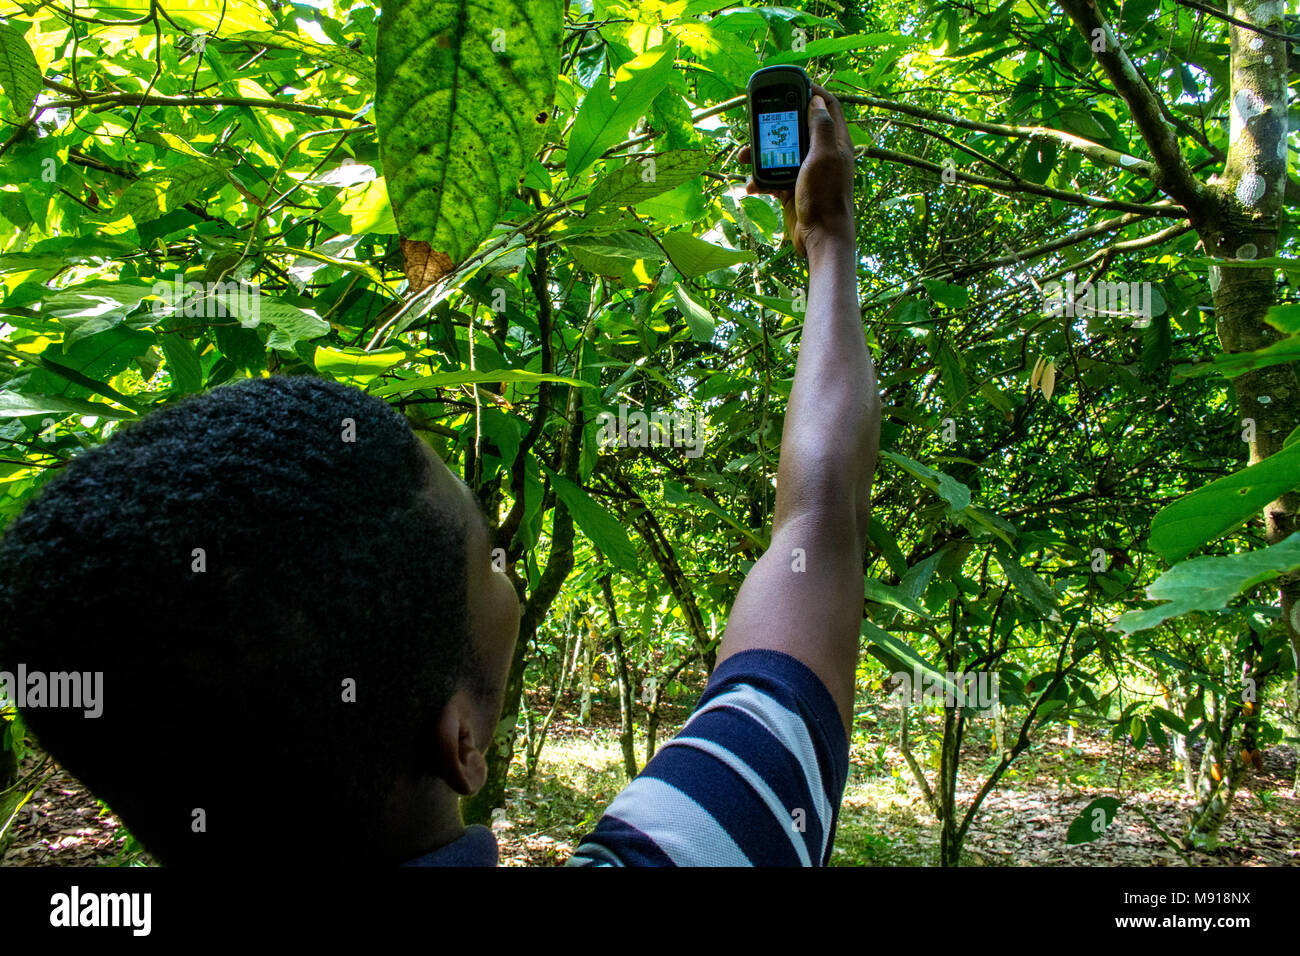 La Costa d Avorio. La localizzazione geografica di una piantagione di cacao con un GPS. Foto Stock